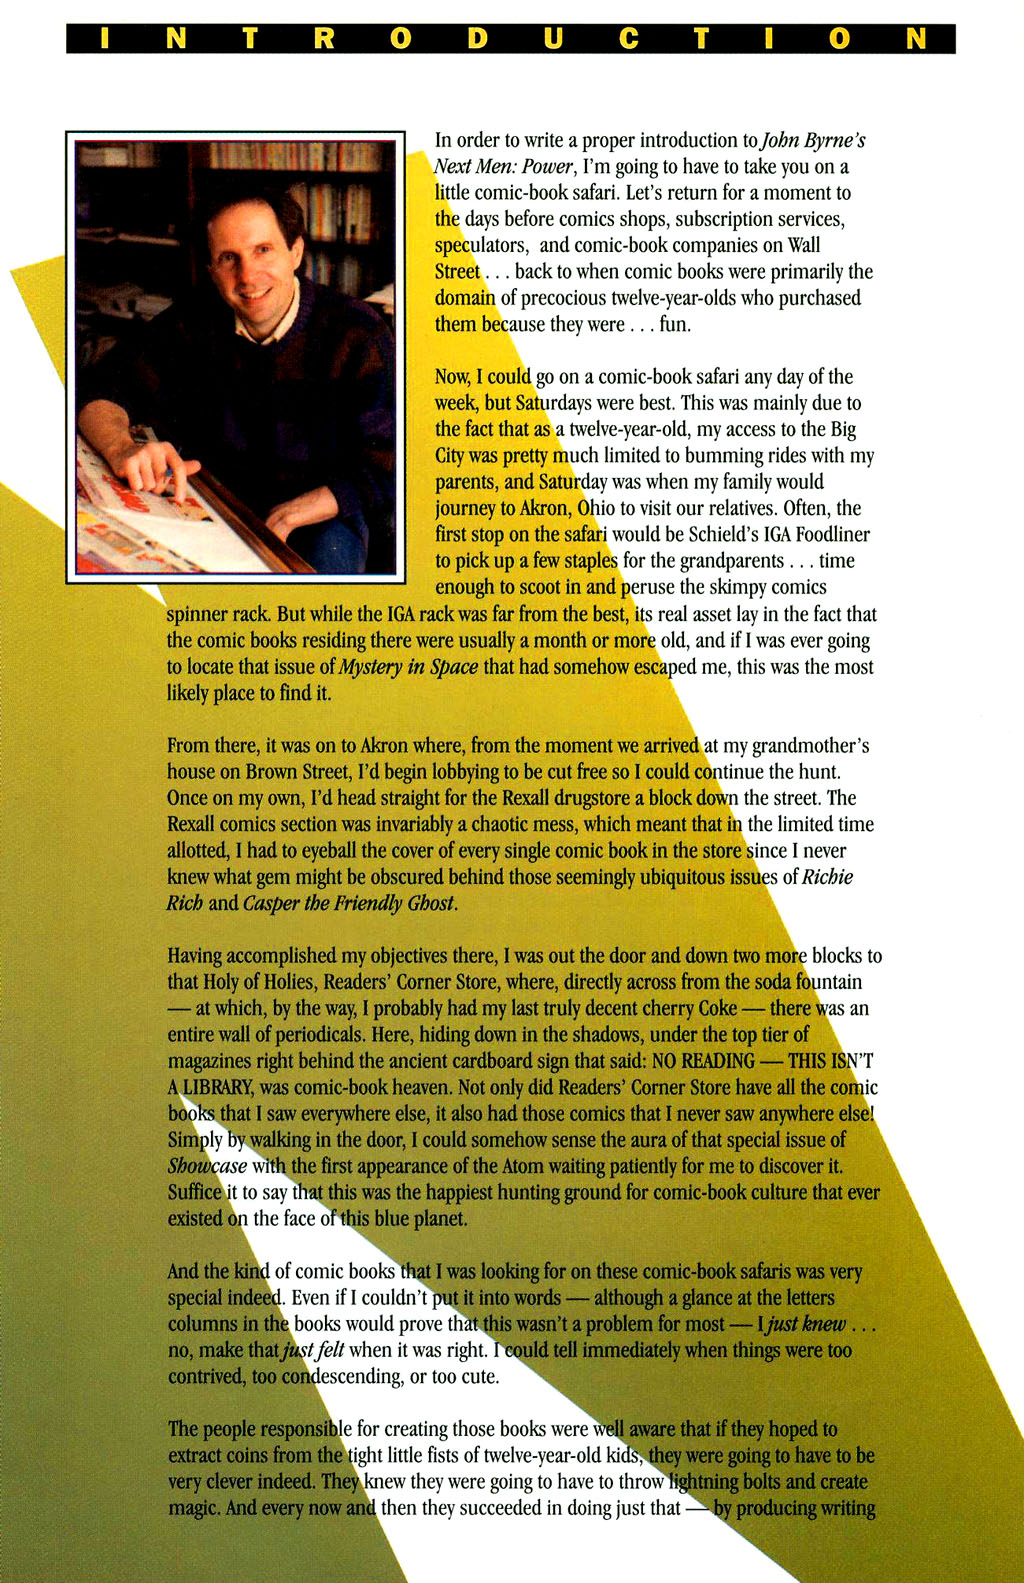 Read online John Byrne's Next Men (1992) comic -  Issue # TPB 5 - 4